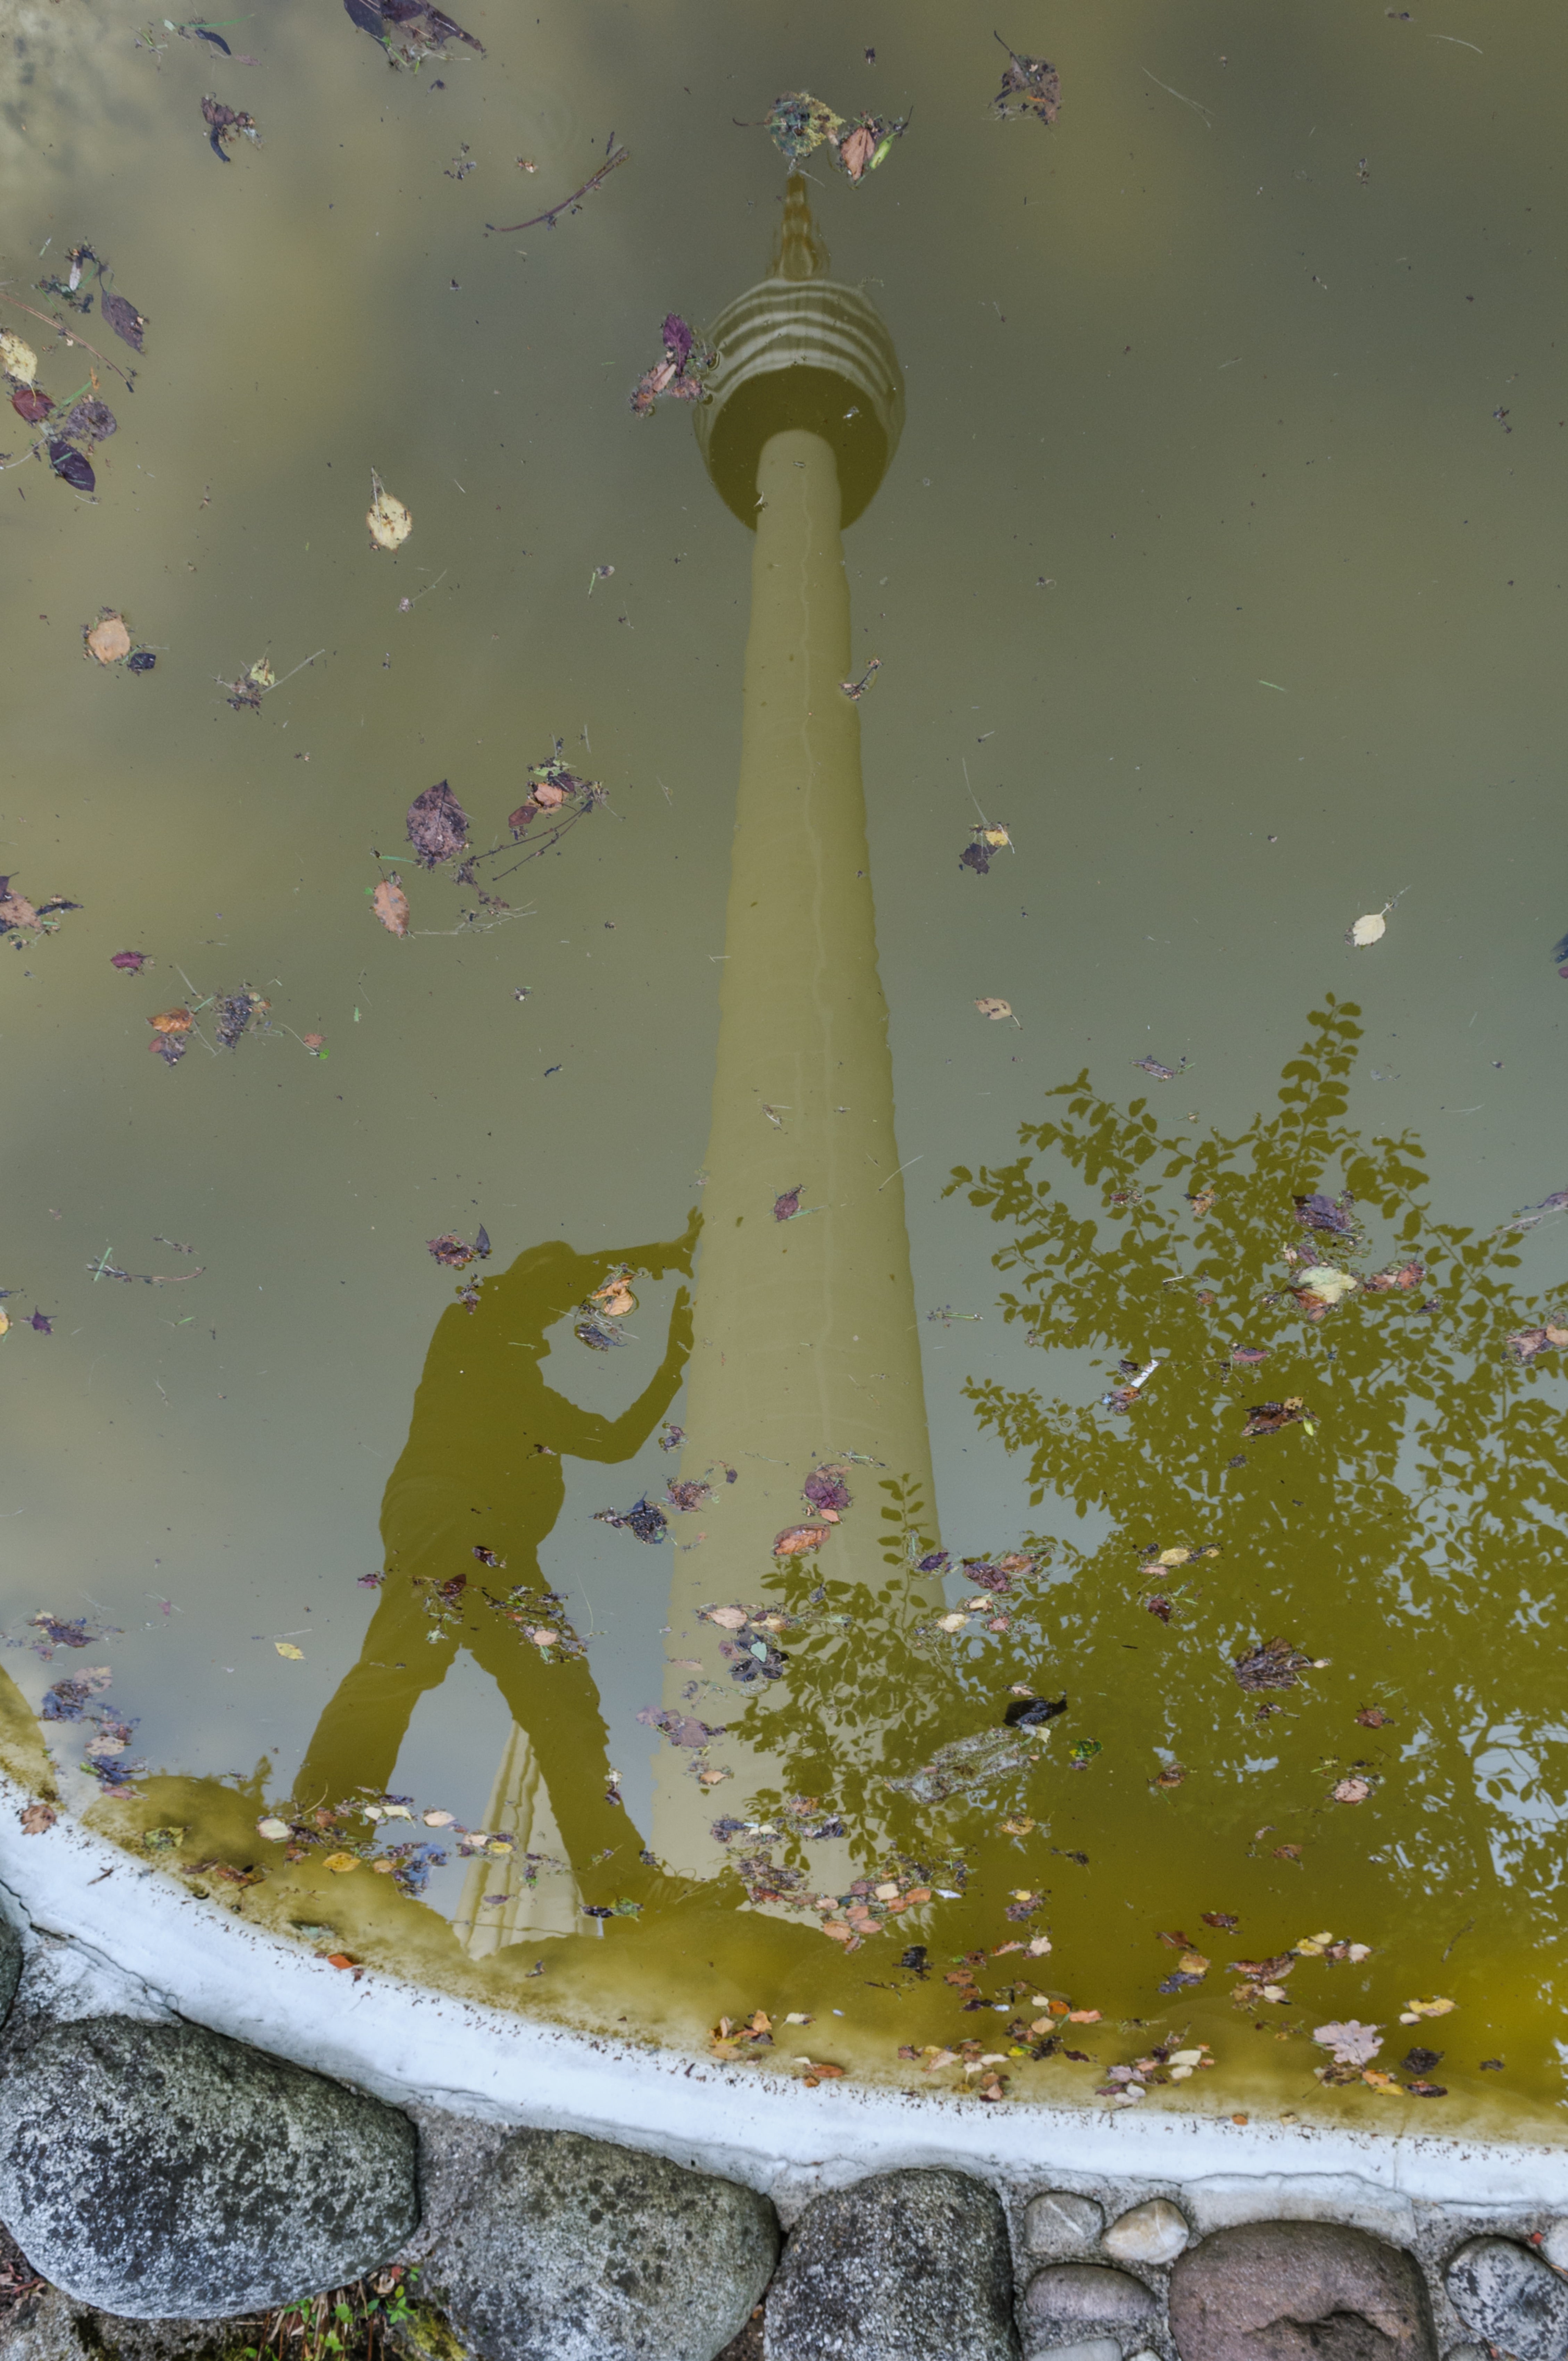 Fernsehturm in Wasser gespiegelt, gespiegelte Silhouette eines Menschen, der Fernsehturm zu stützen scheint